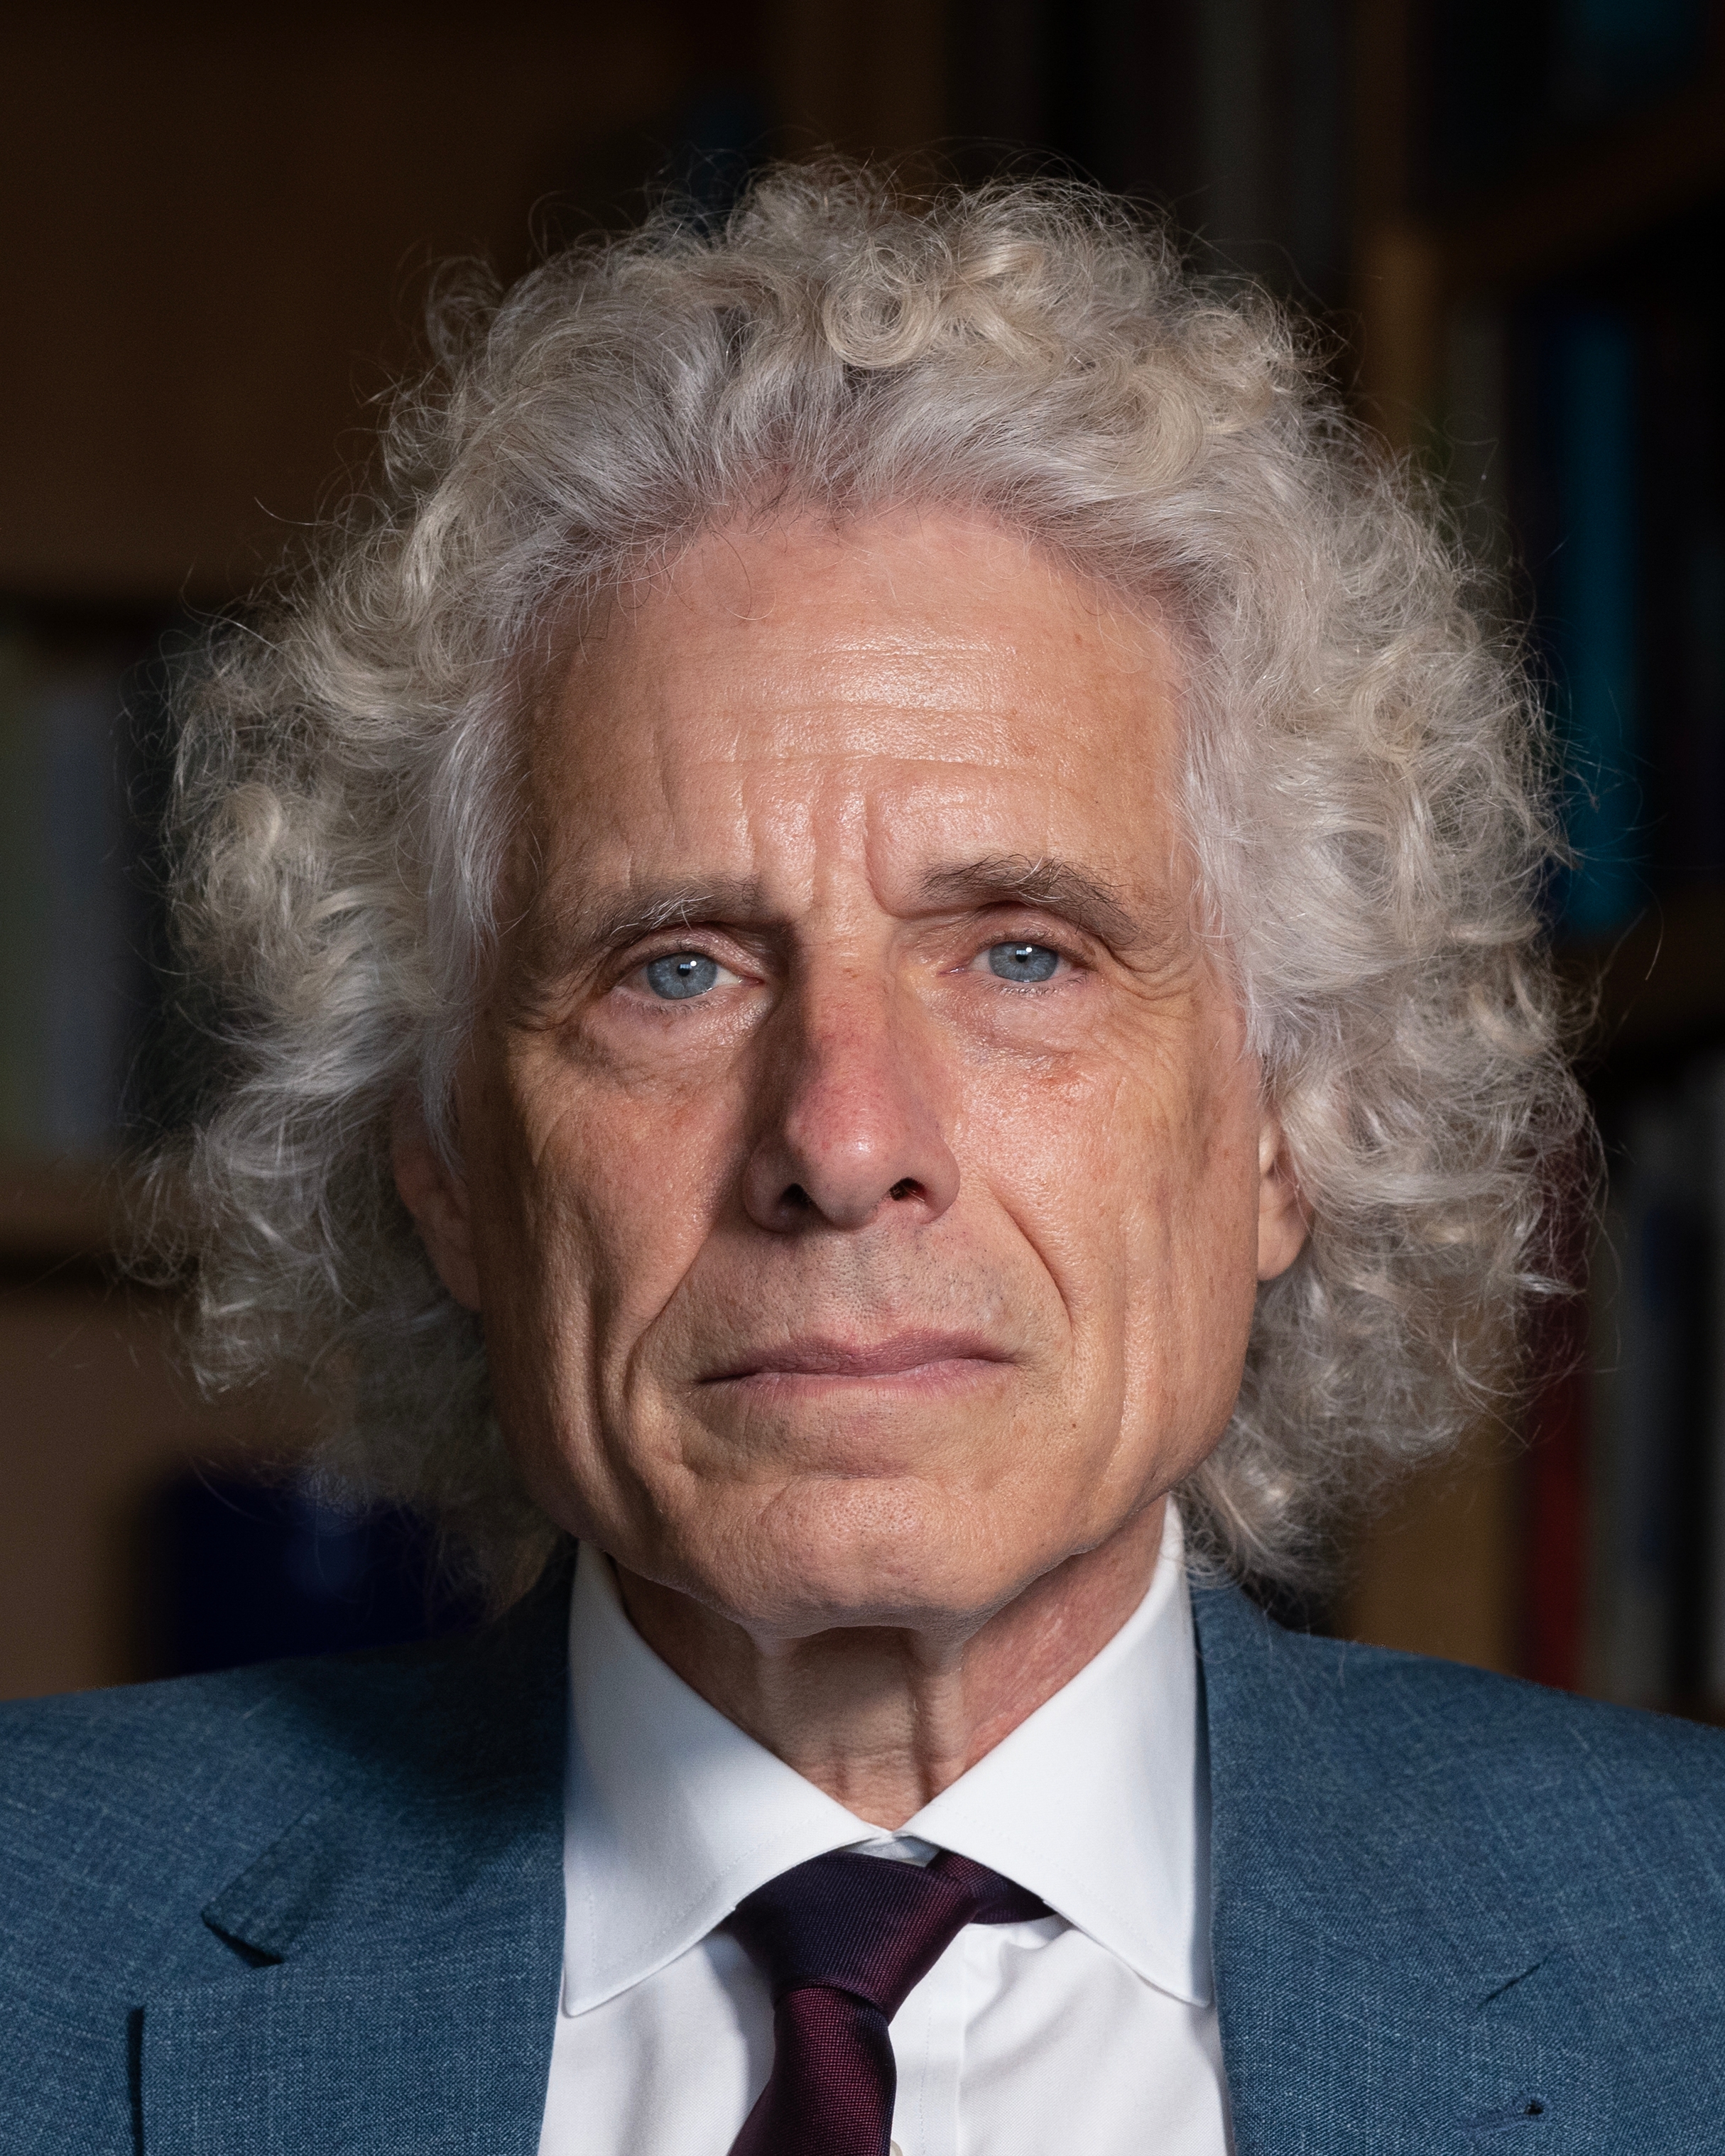 auteur Steven Pinker de la citation Quelles que soient ses causes, blâmer sans réfléchir le présent est une faiblesse qui, même si elle n'est jamais interdite, doit être résistée. Bien que communément affiché comme un signe de sophistication, cela peut être une opportunité pour une augmentation et une excuse pour la misanthropie, en particulier contre les jeunes.